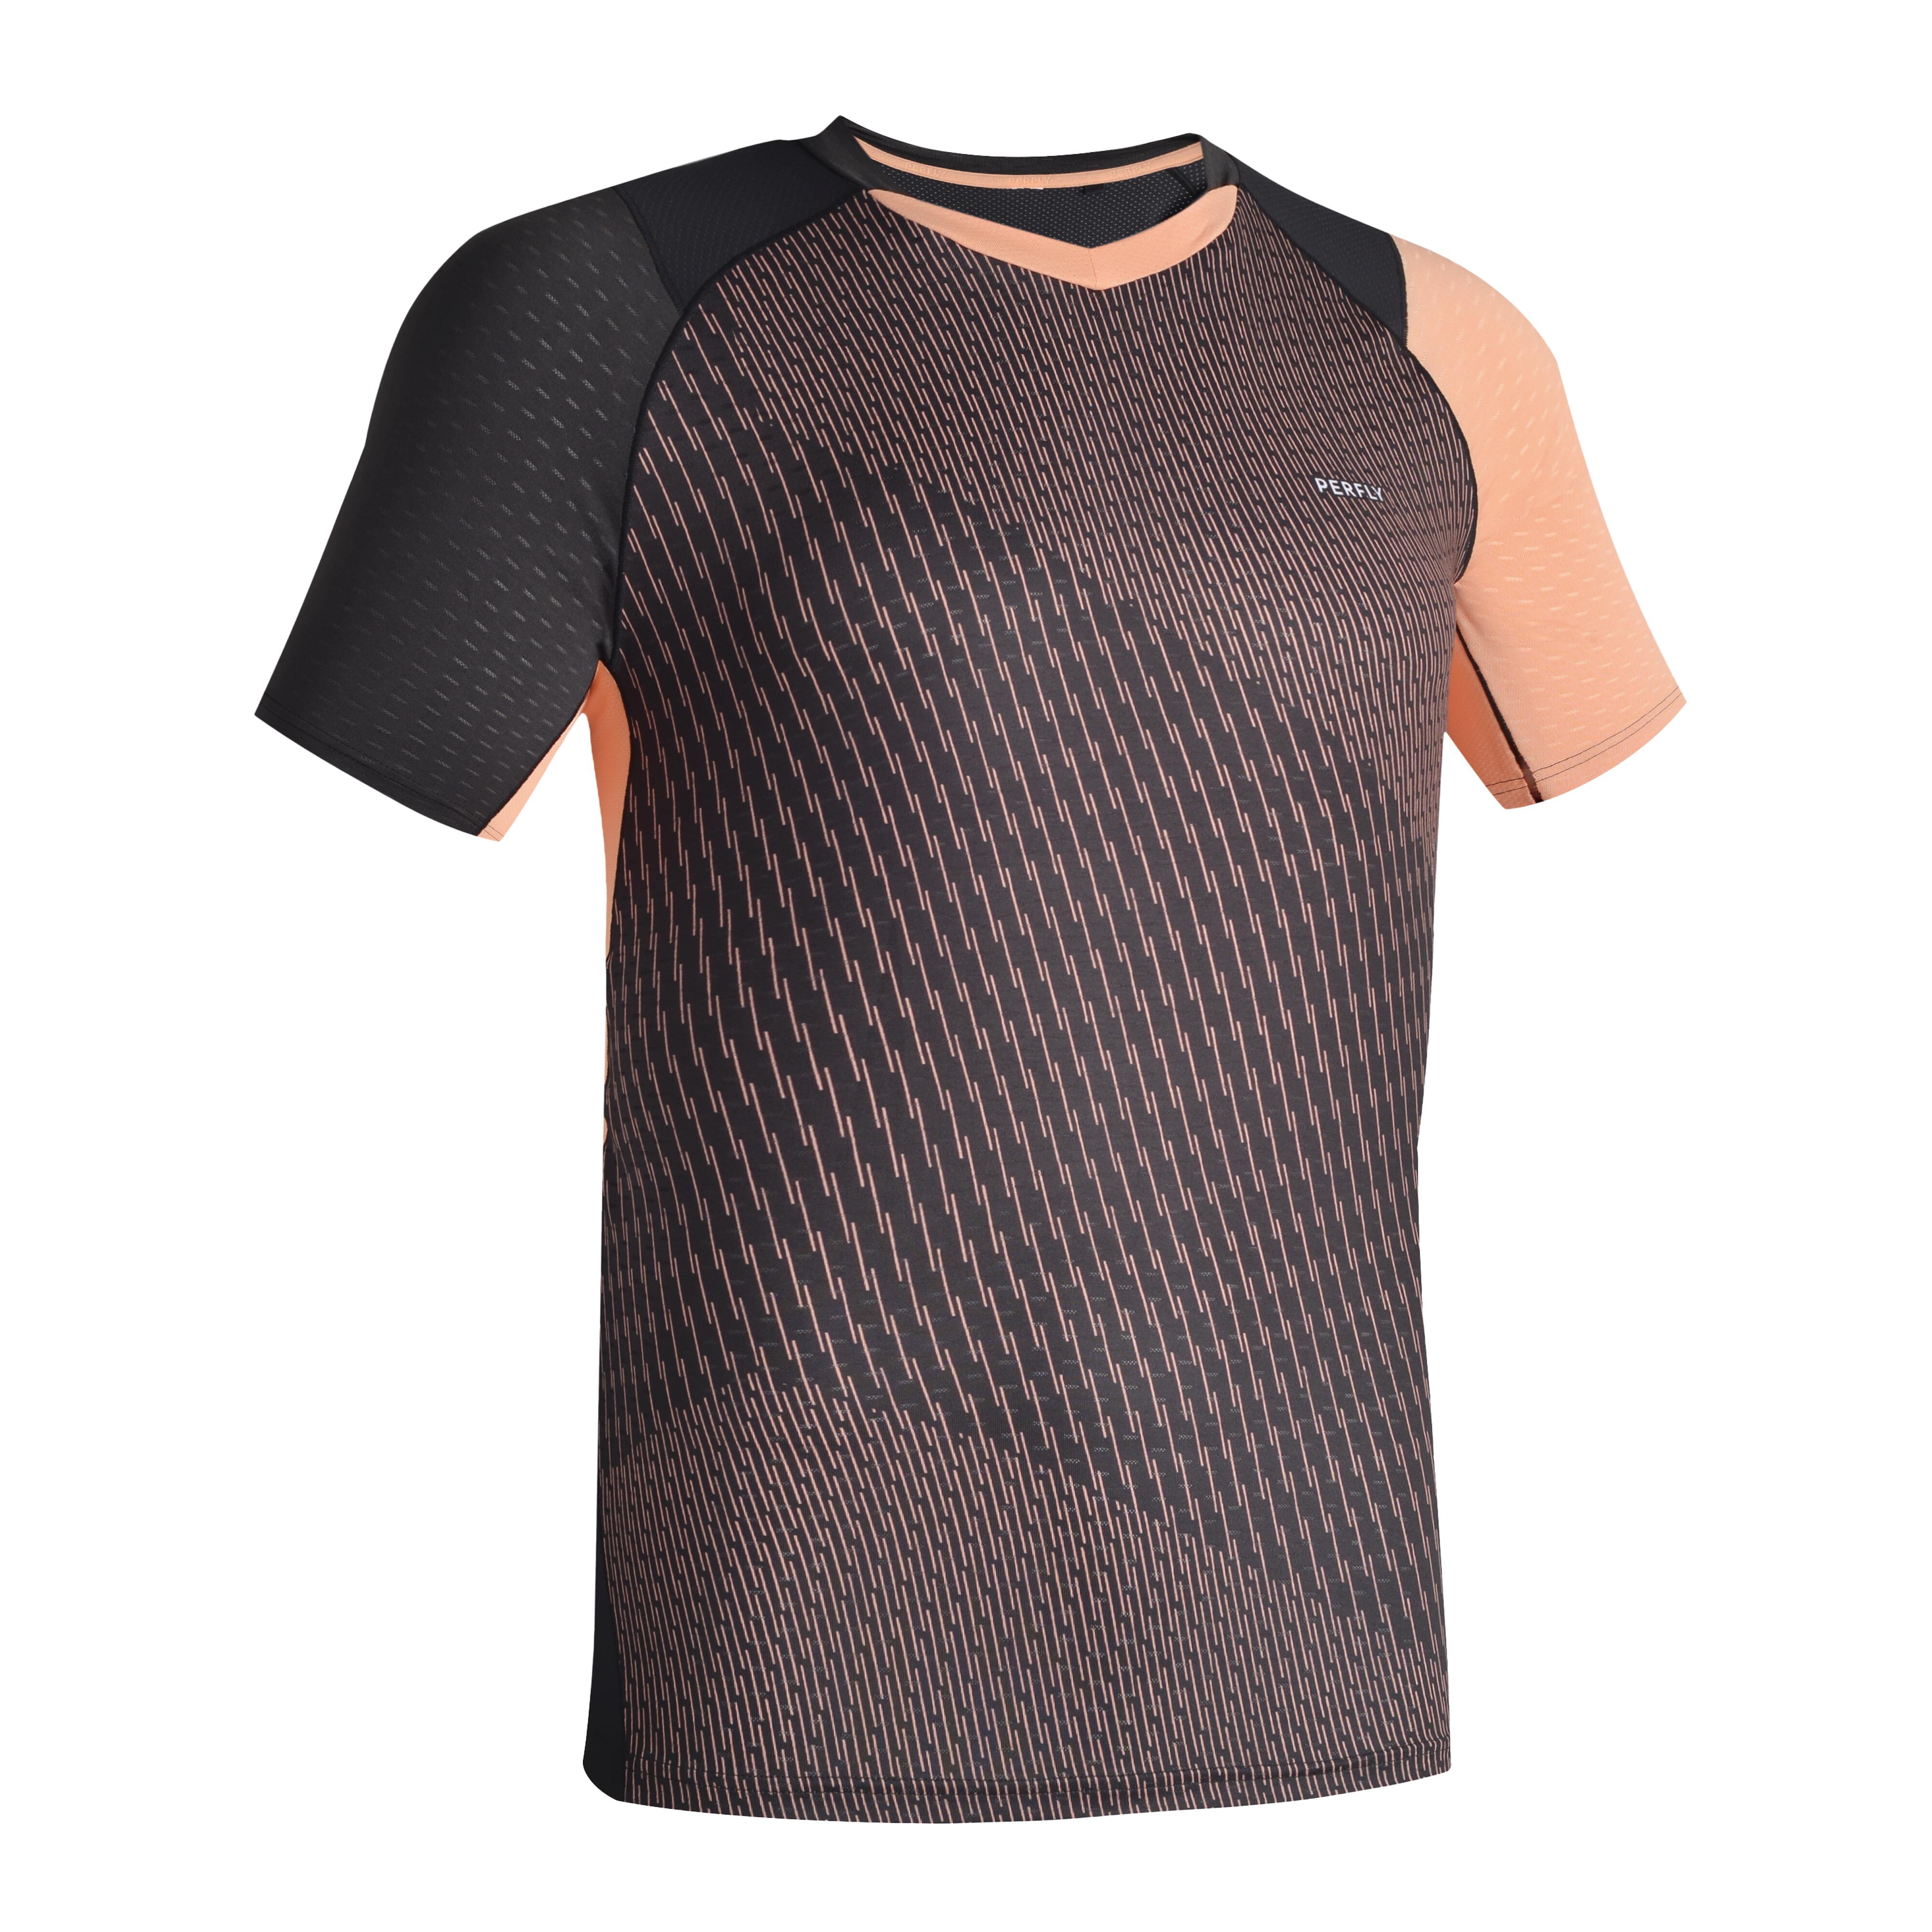 T-shirt För Badminton 560 Herr Svart/aprikos